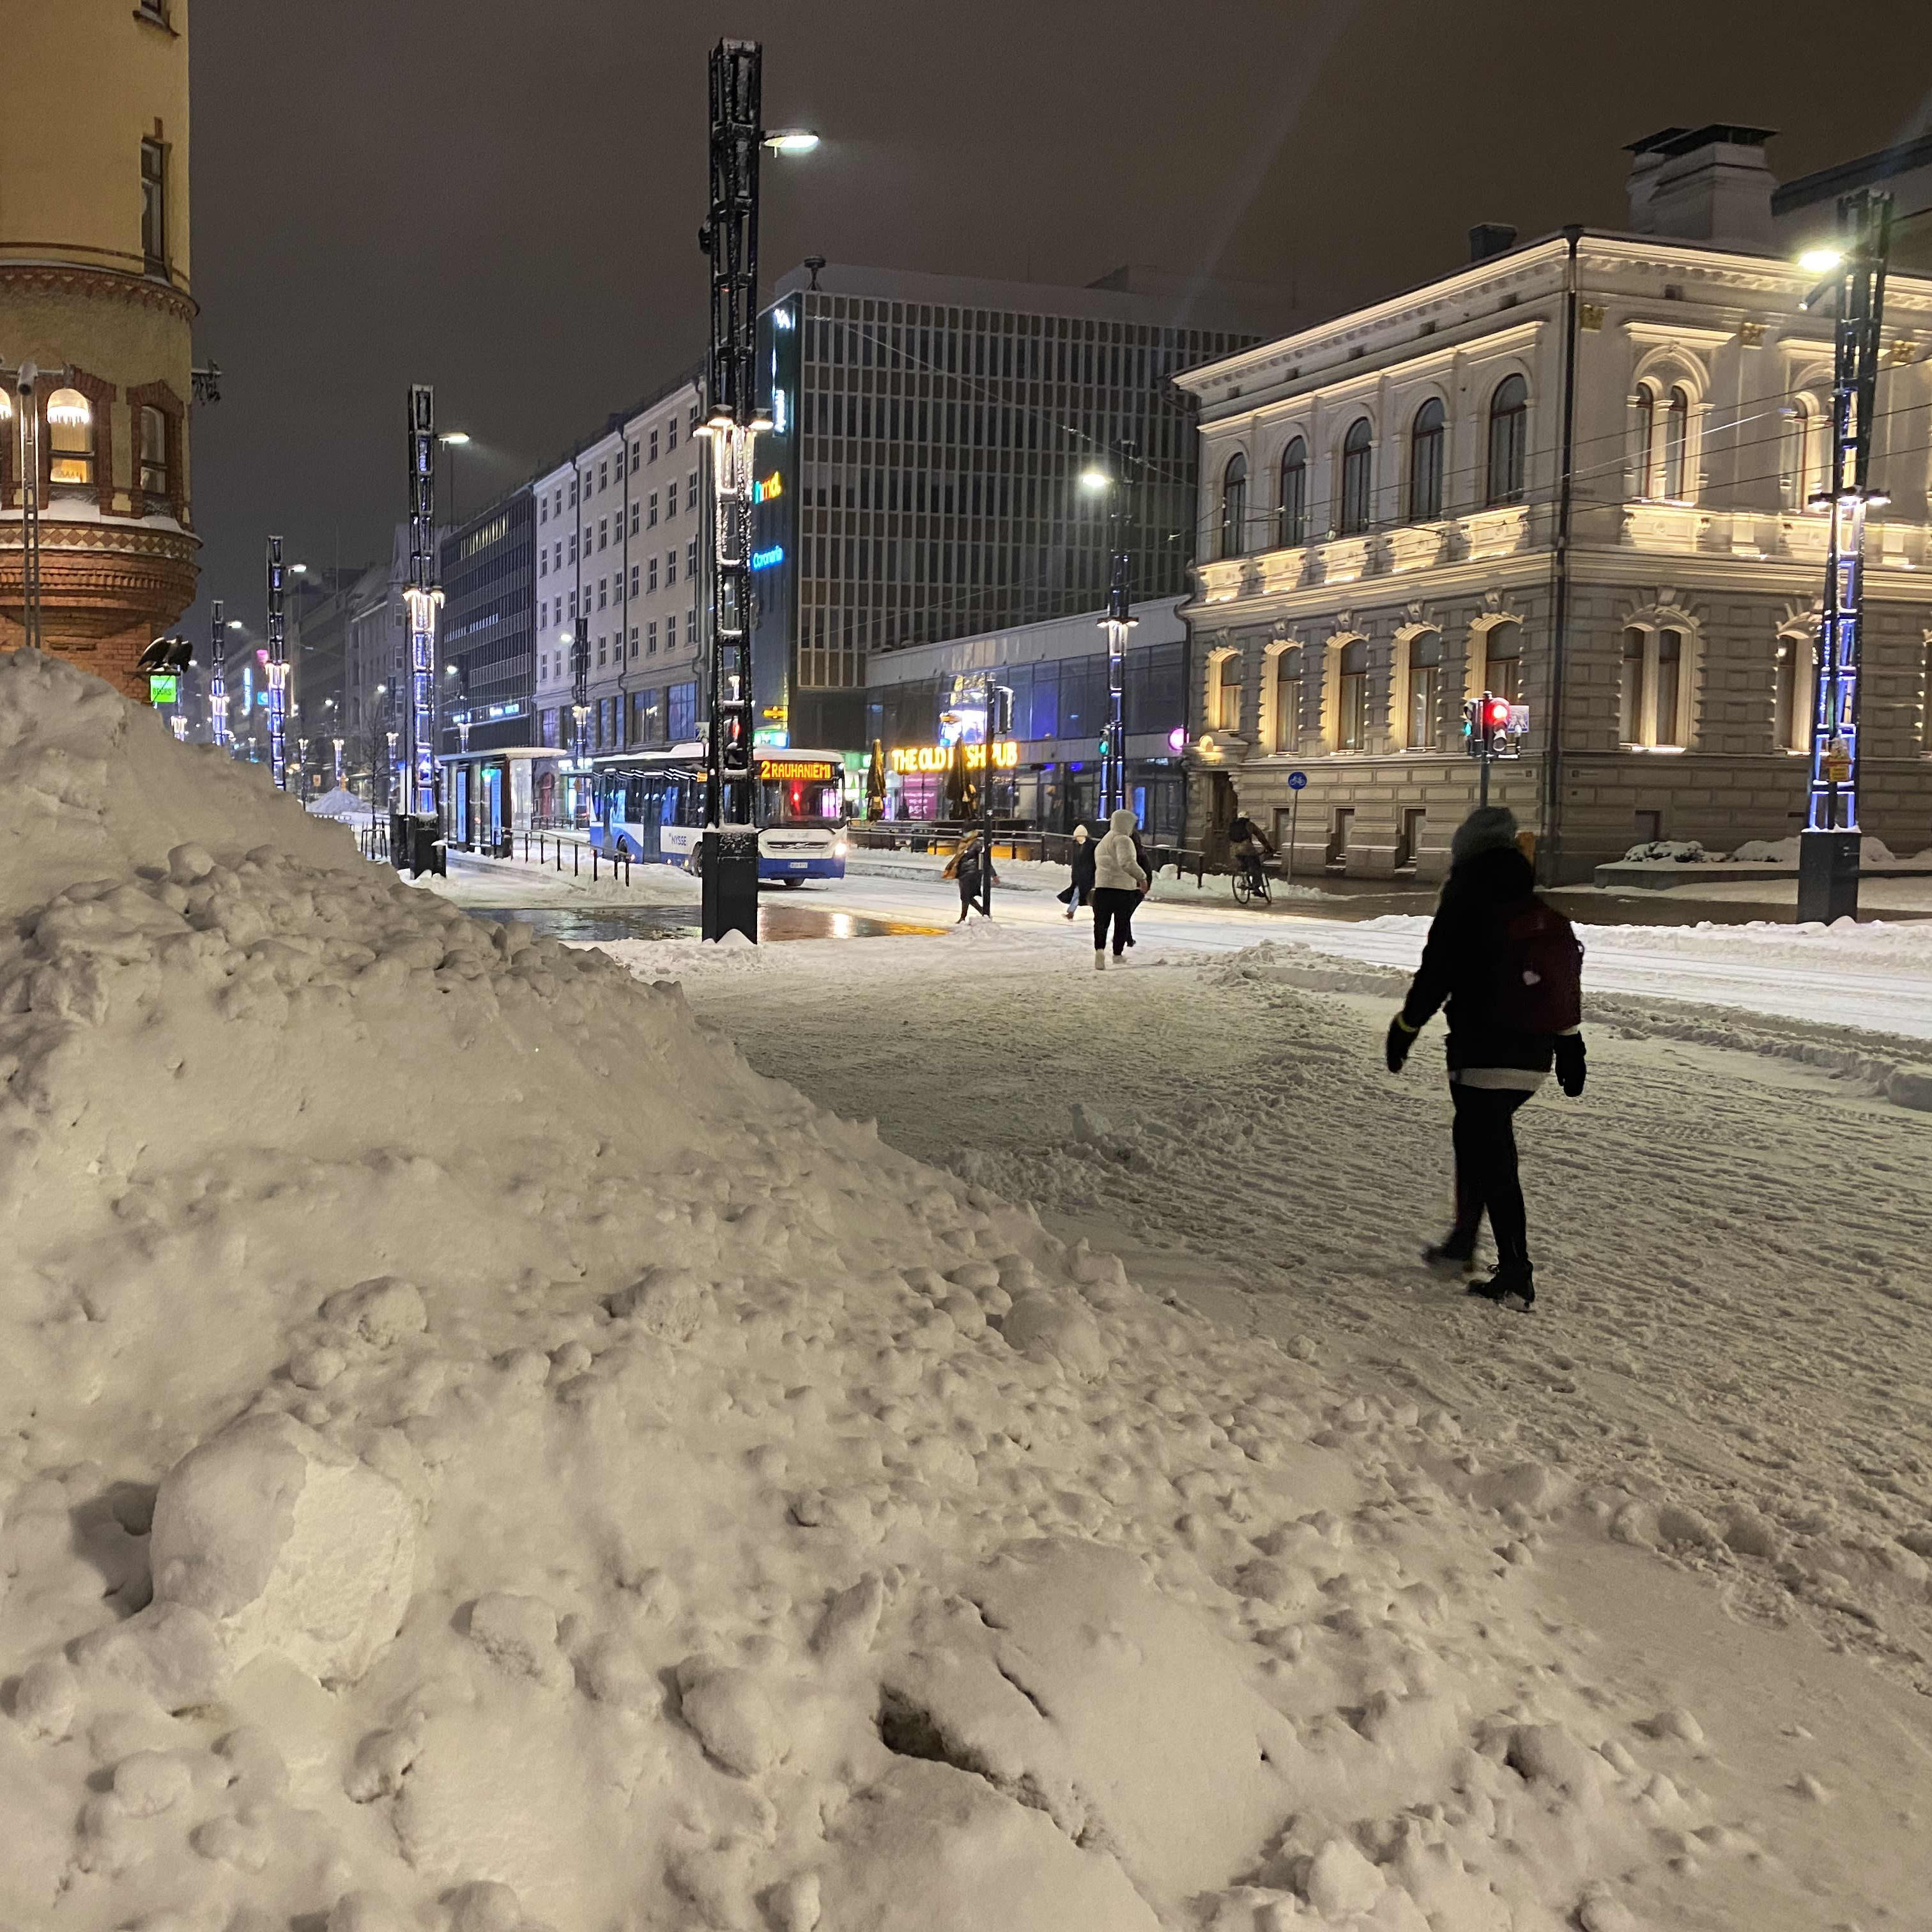 Talvinen katu Tampereella.